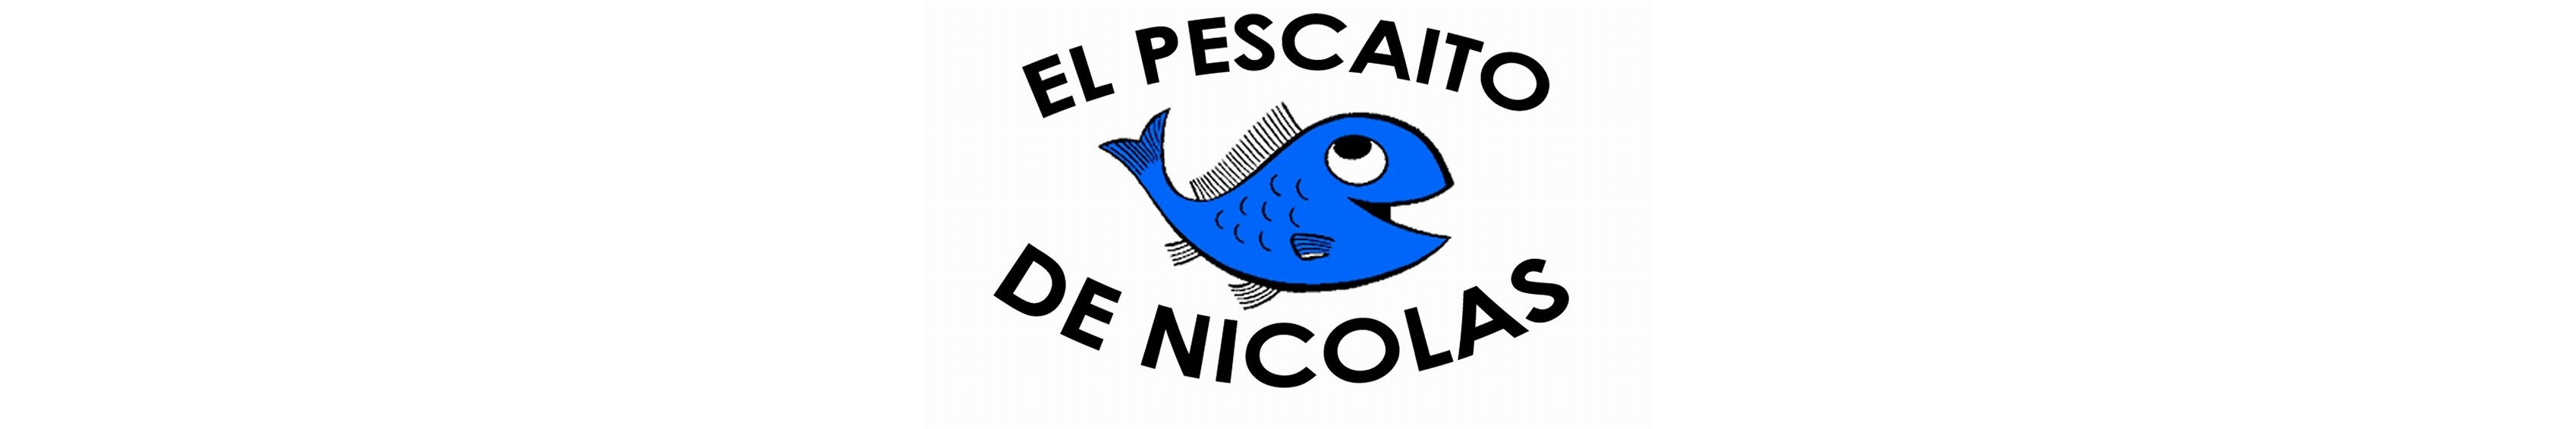 Freidura El Pescaito de Nicolas 